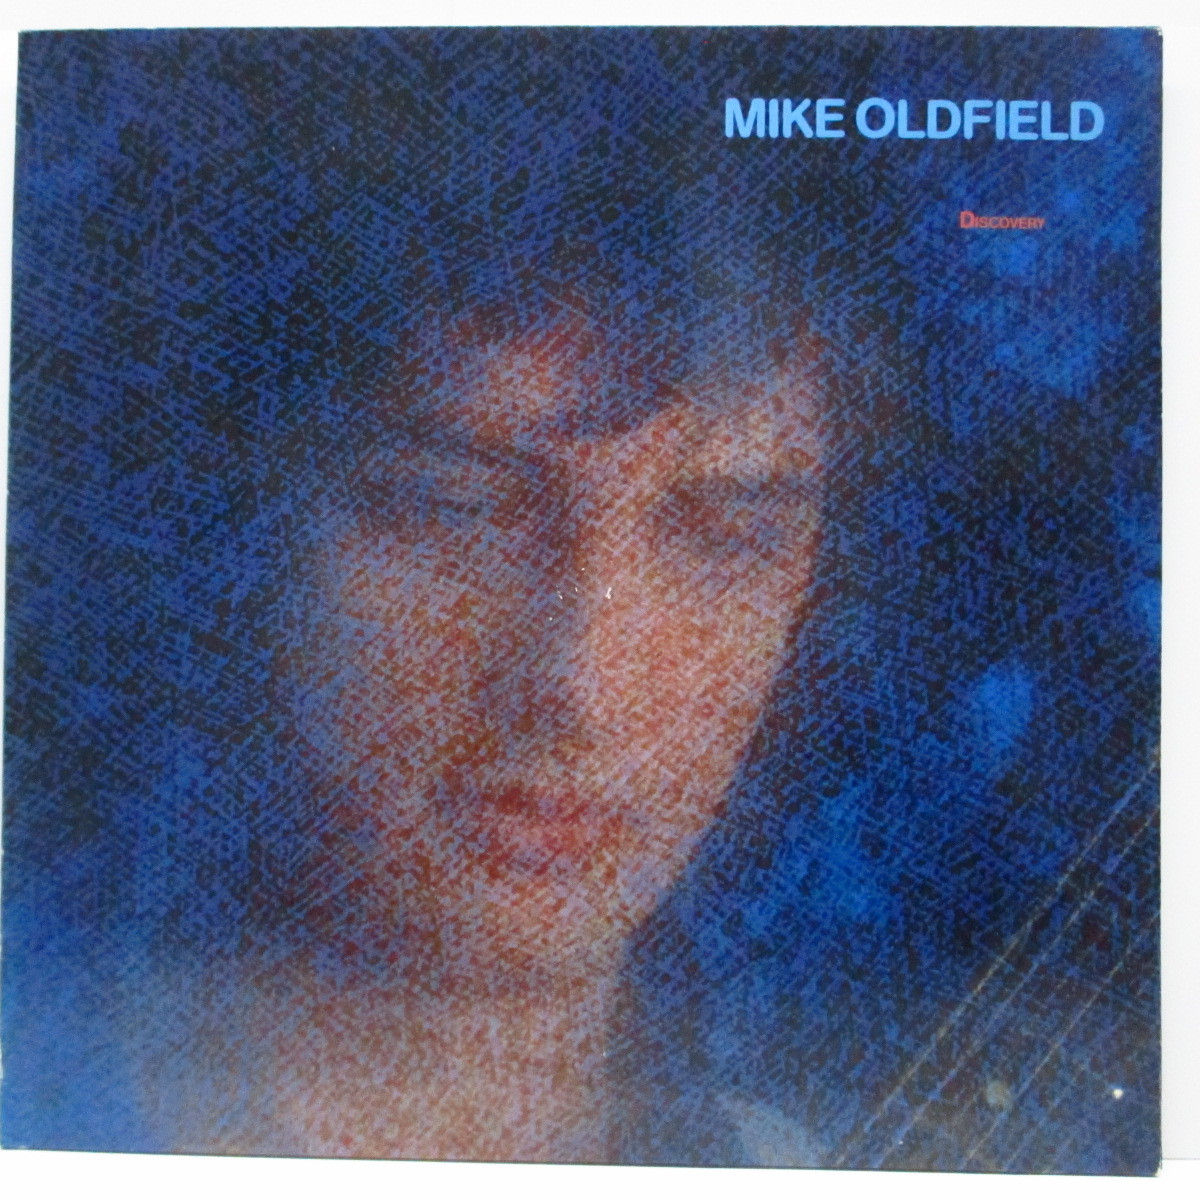 MIKE OLDFIELD(マイク・オールドフィールド)-Discovery (EU オリジナル LP+インナー)マイク_画像1